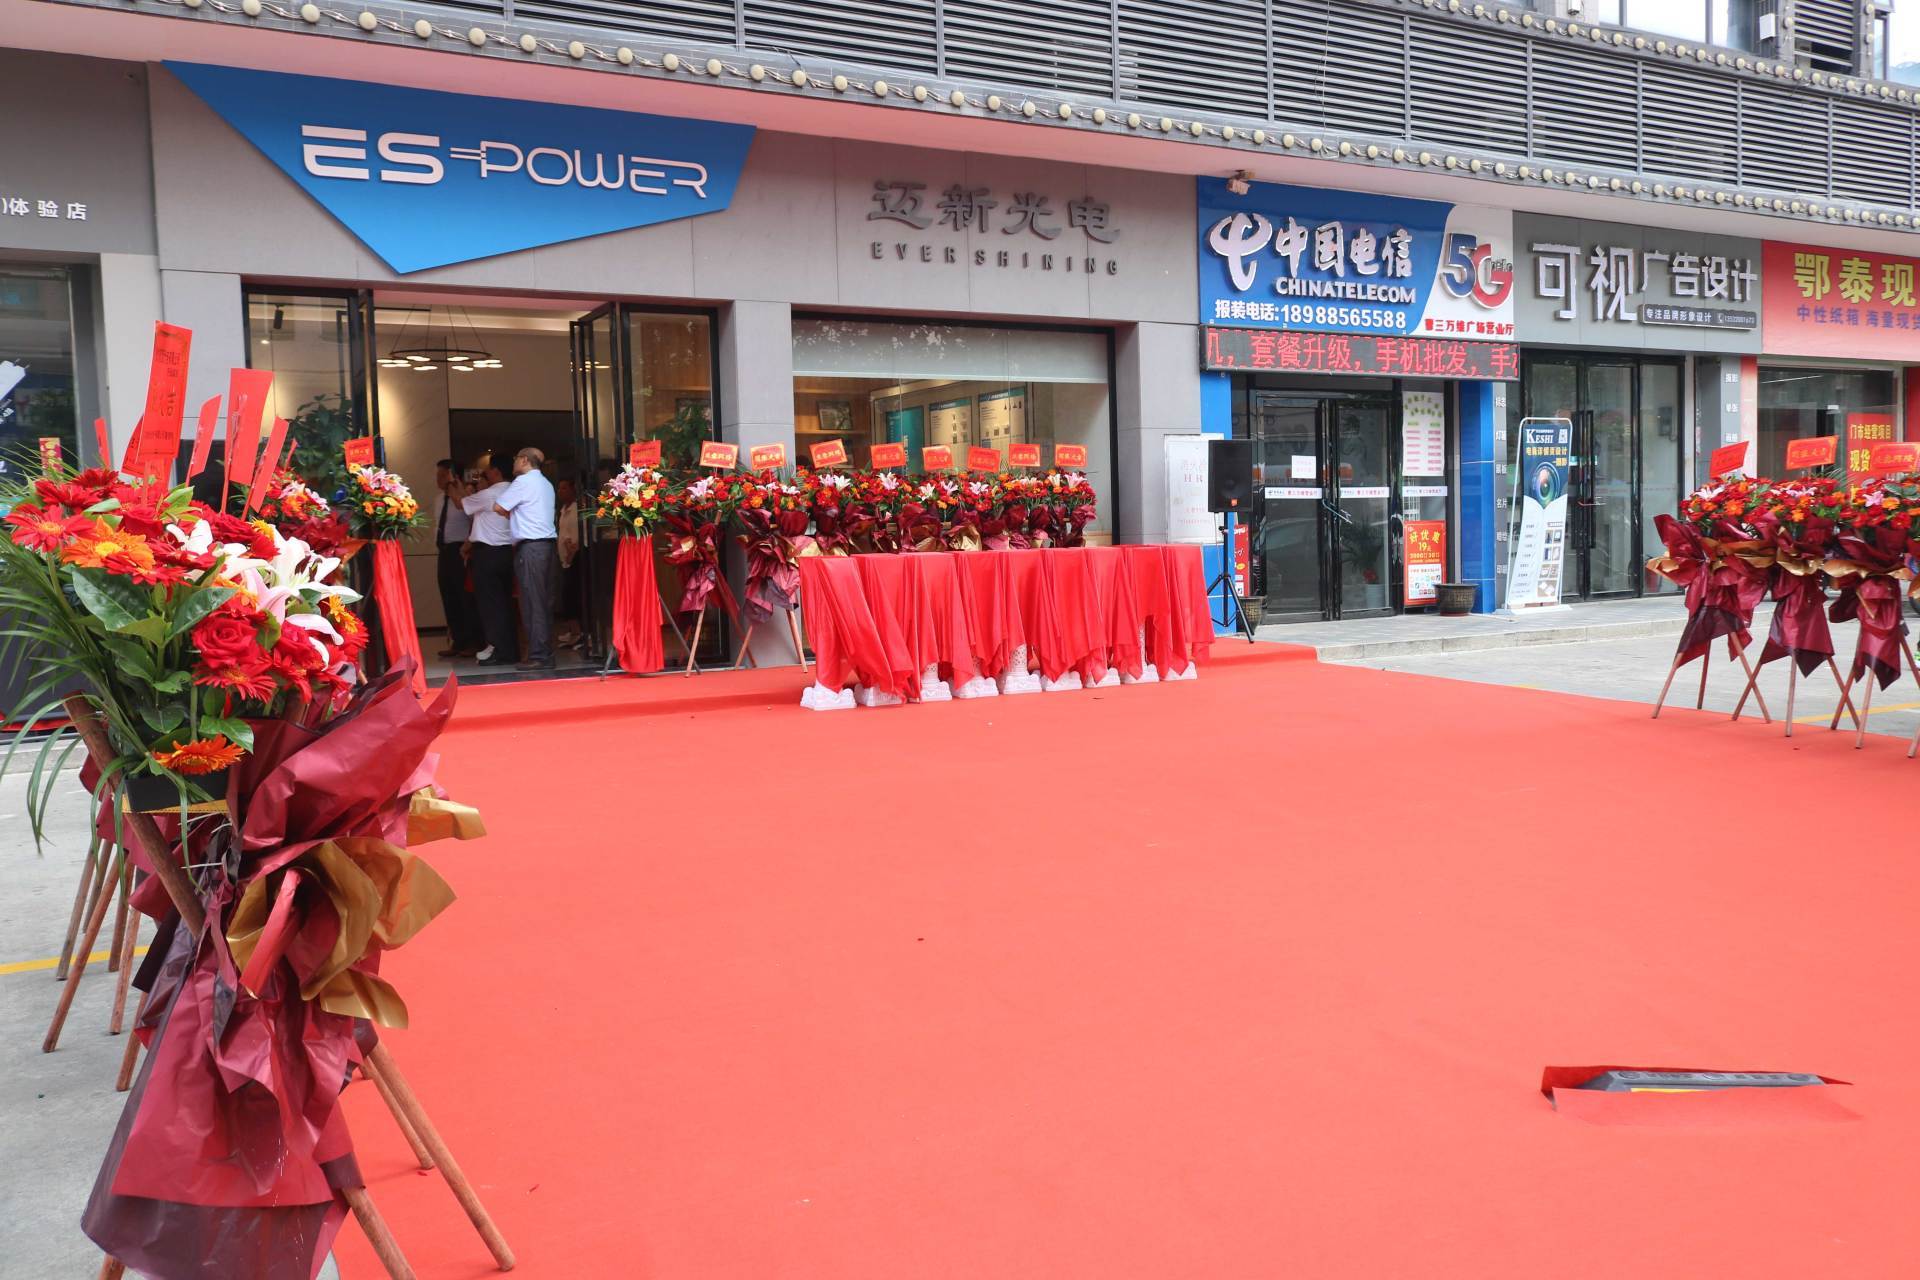 Ever Shining-ZhongShan Branch opened 